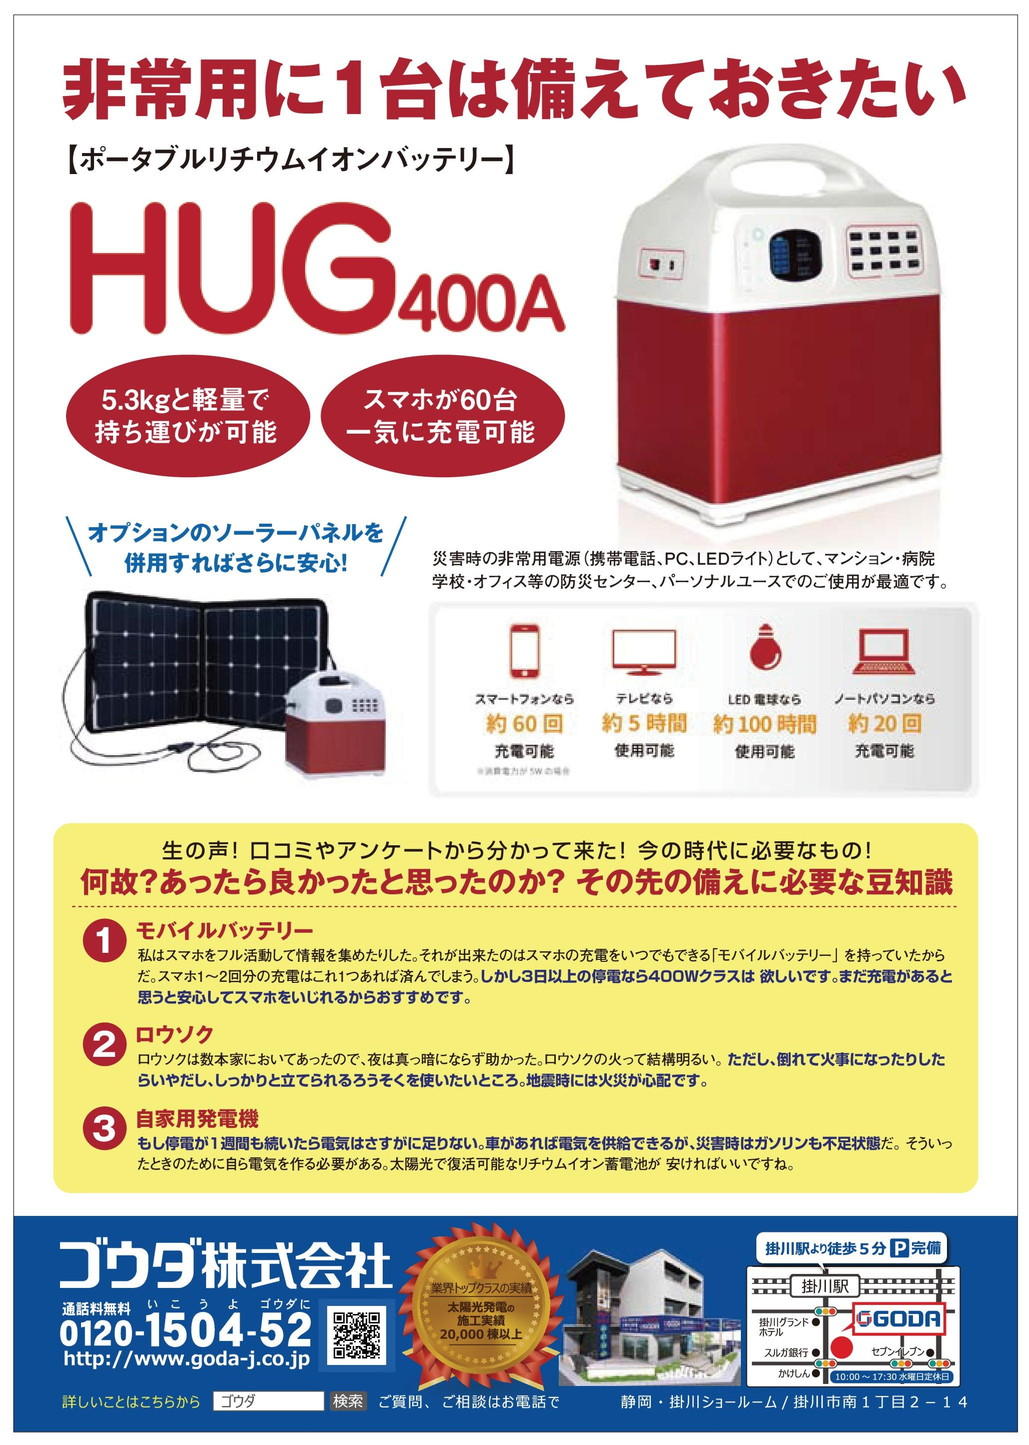 HUG-400Ａチラシ.jpg